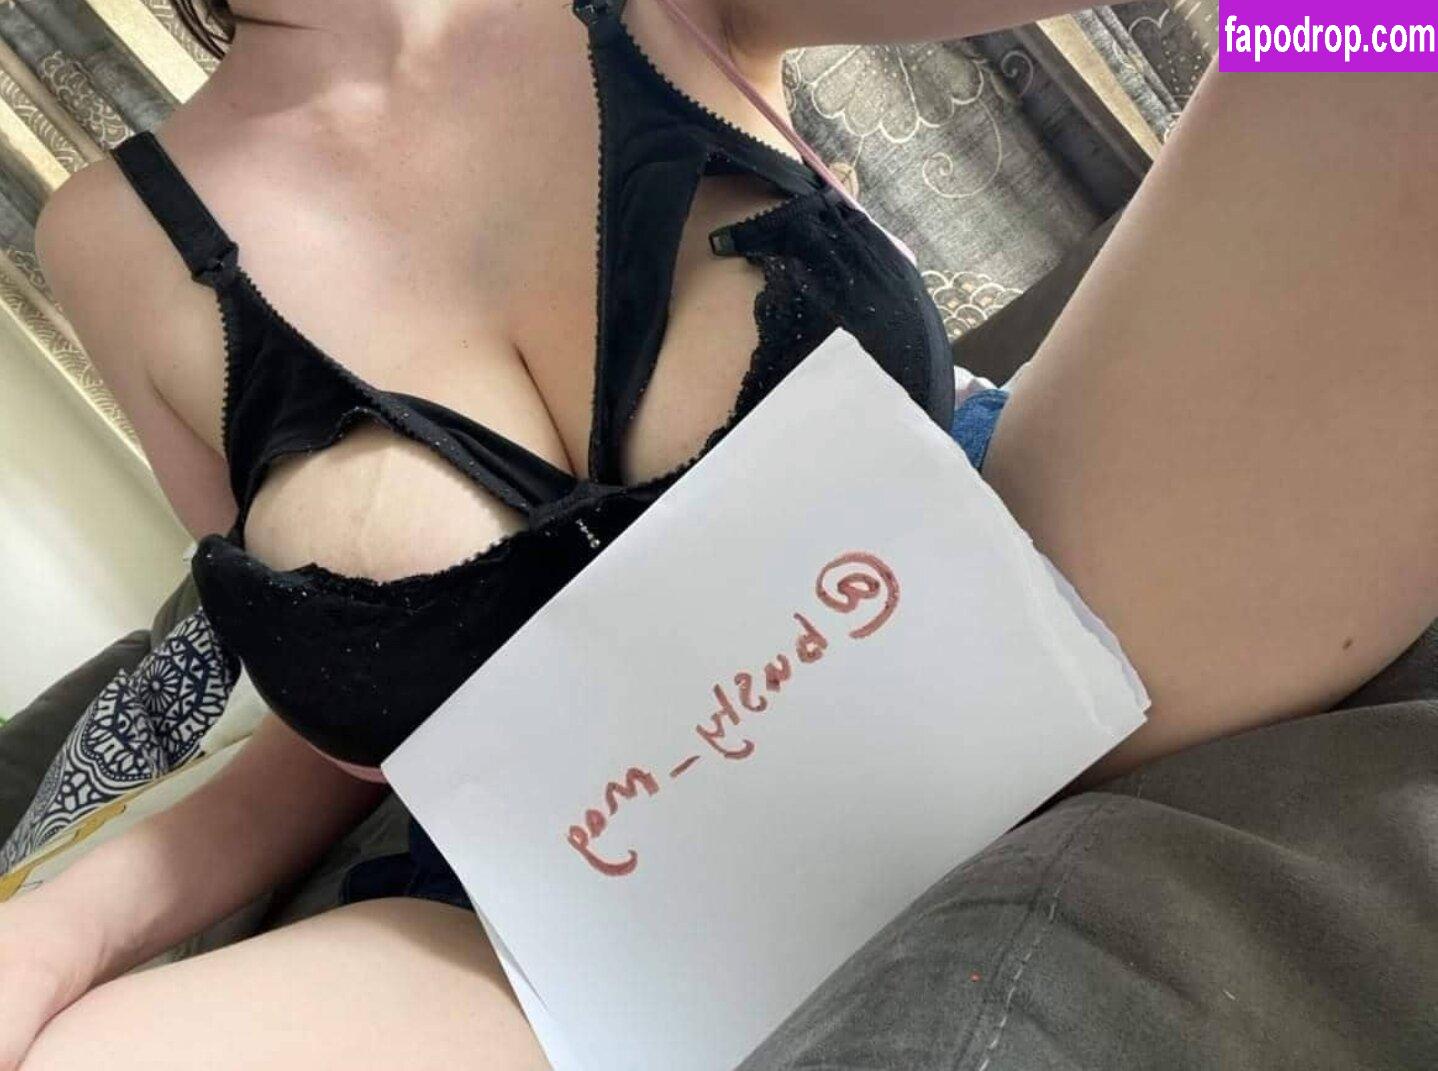 Lauren Modra / littlemissloz / lmisslozpriv leak of nude photo #0201 from OnlyFans or Patreon